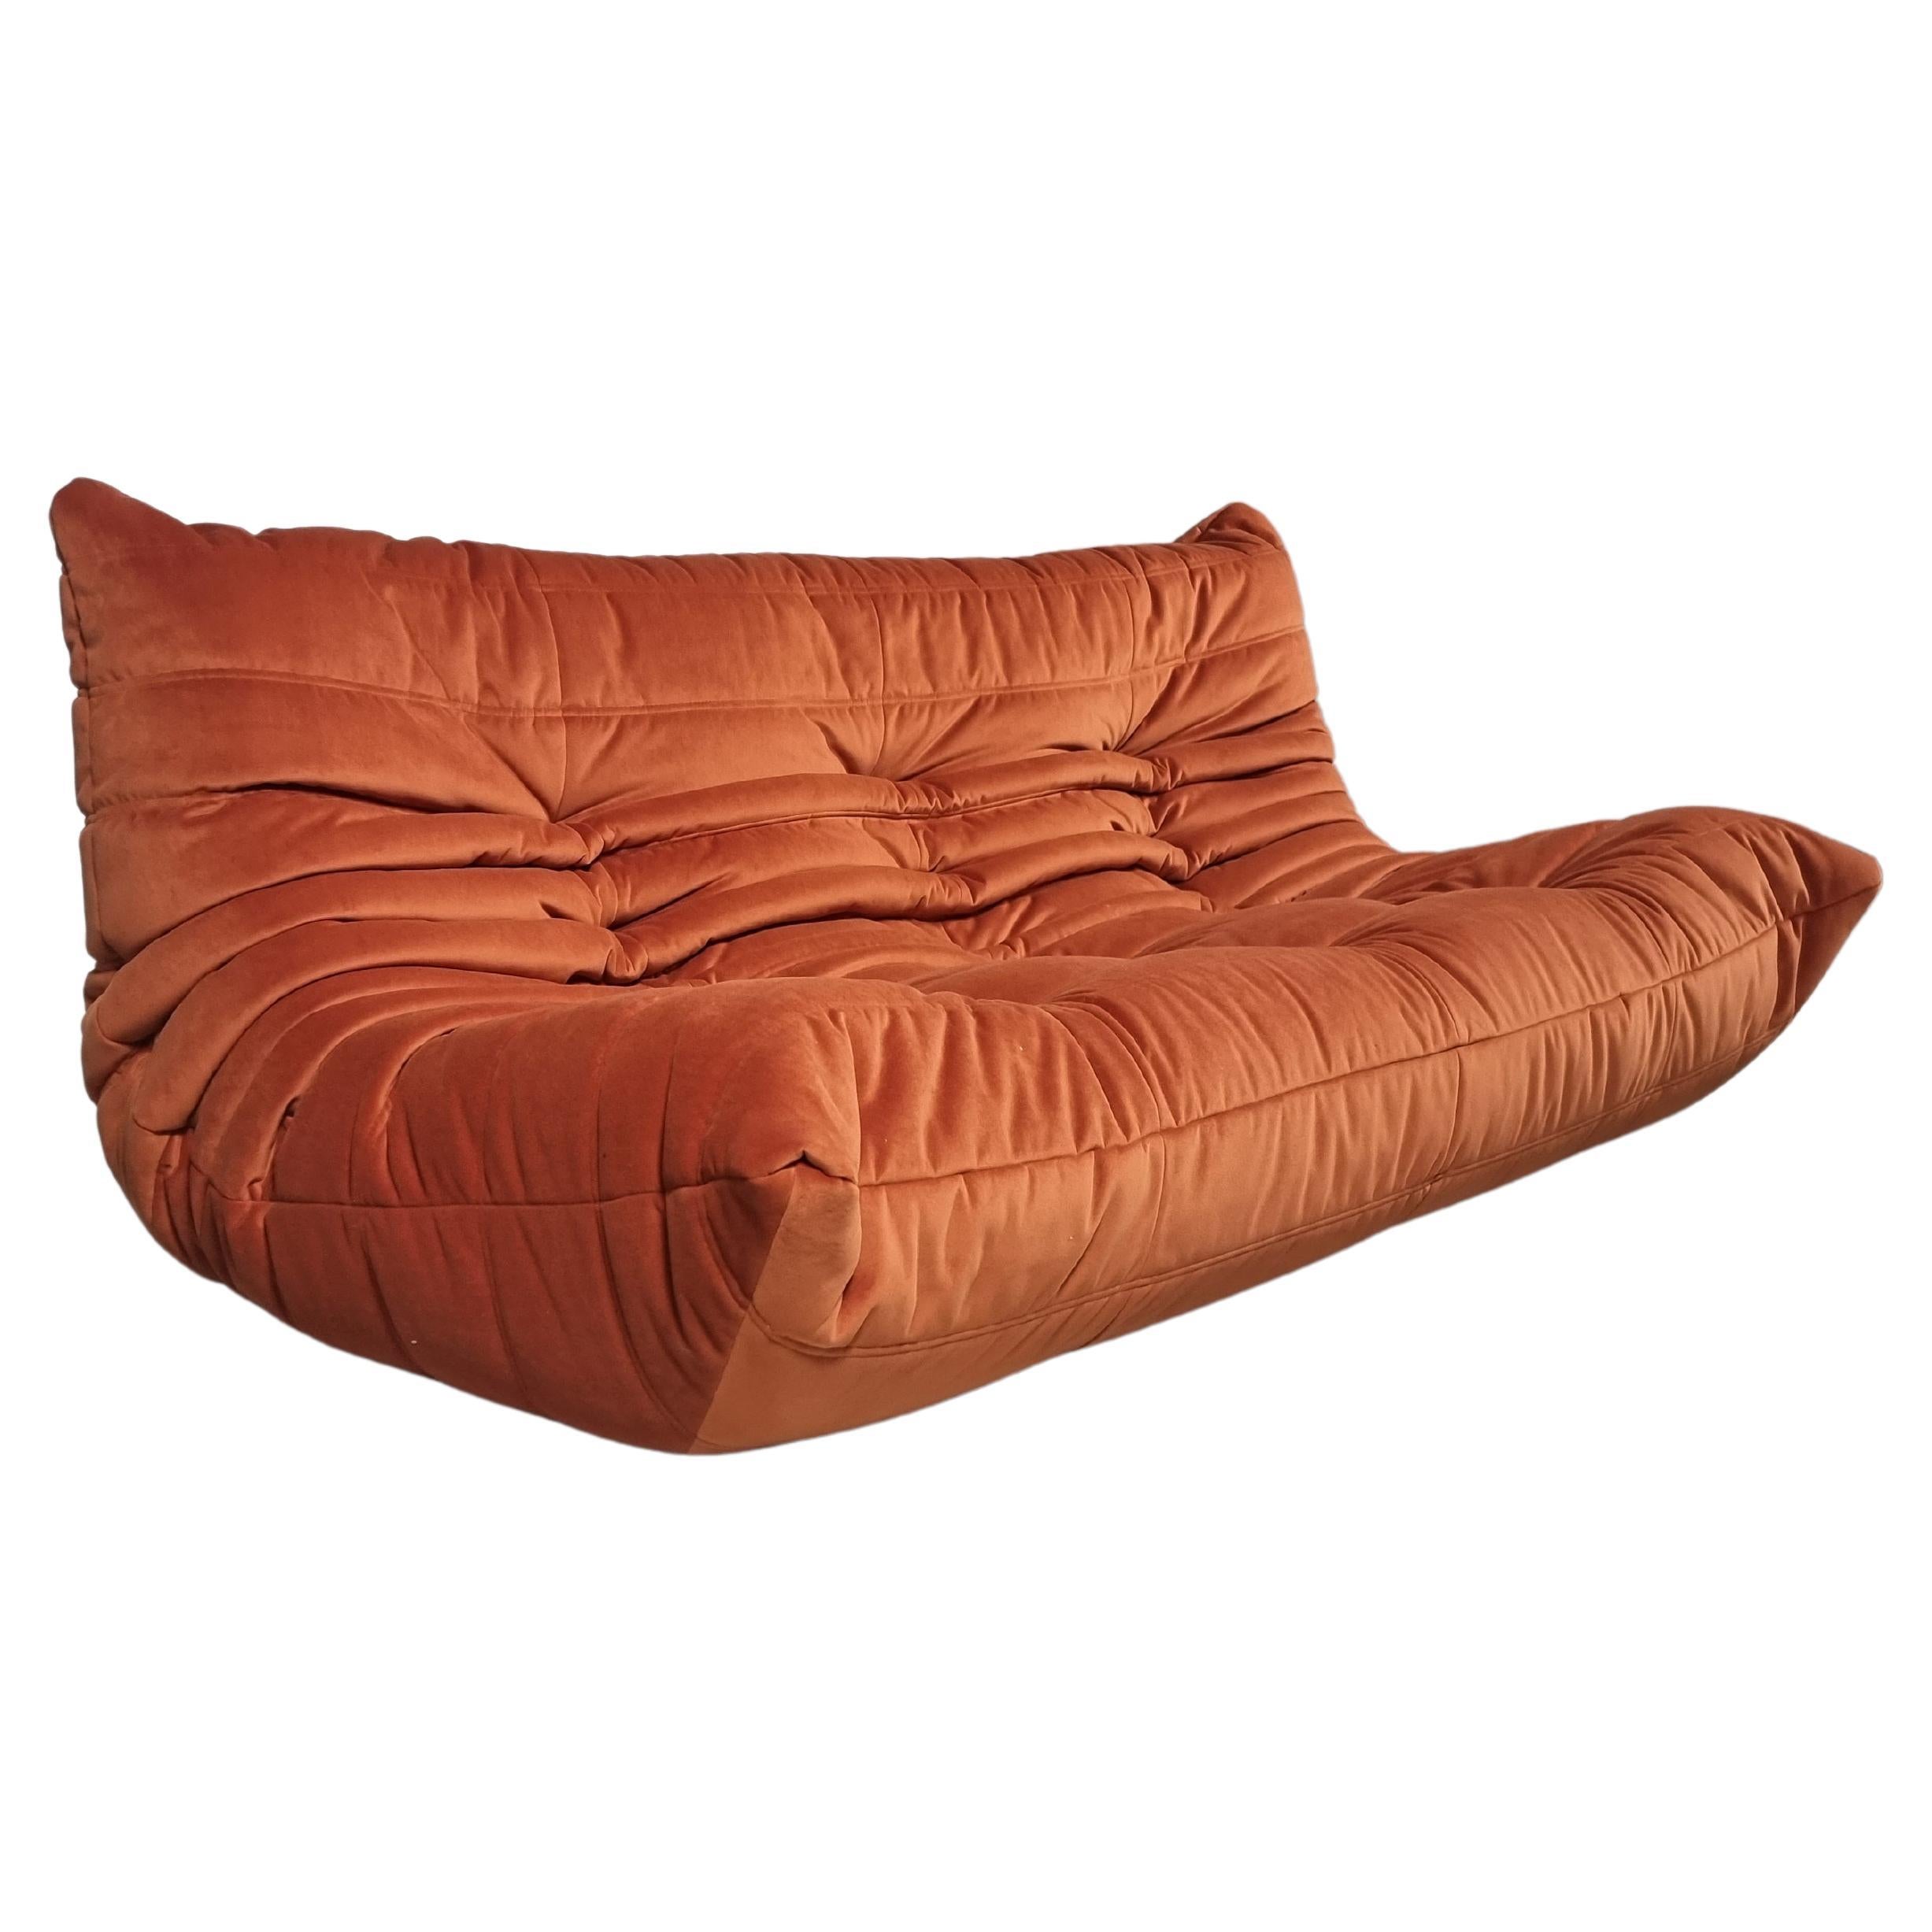 Sandra 3 Seater Sofa In Mohair Velvet By Annie Hiéronimus For Cinna Ligne Roset At 1stdibs